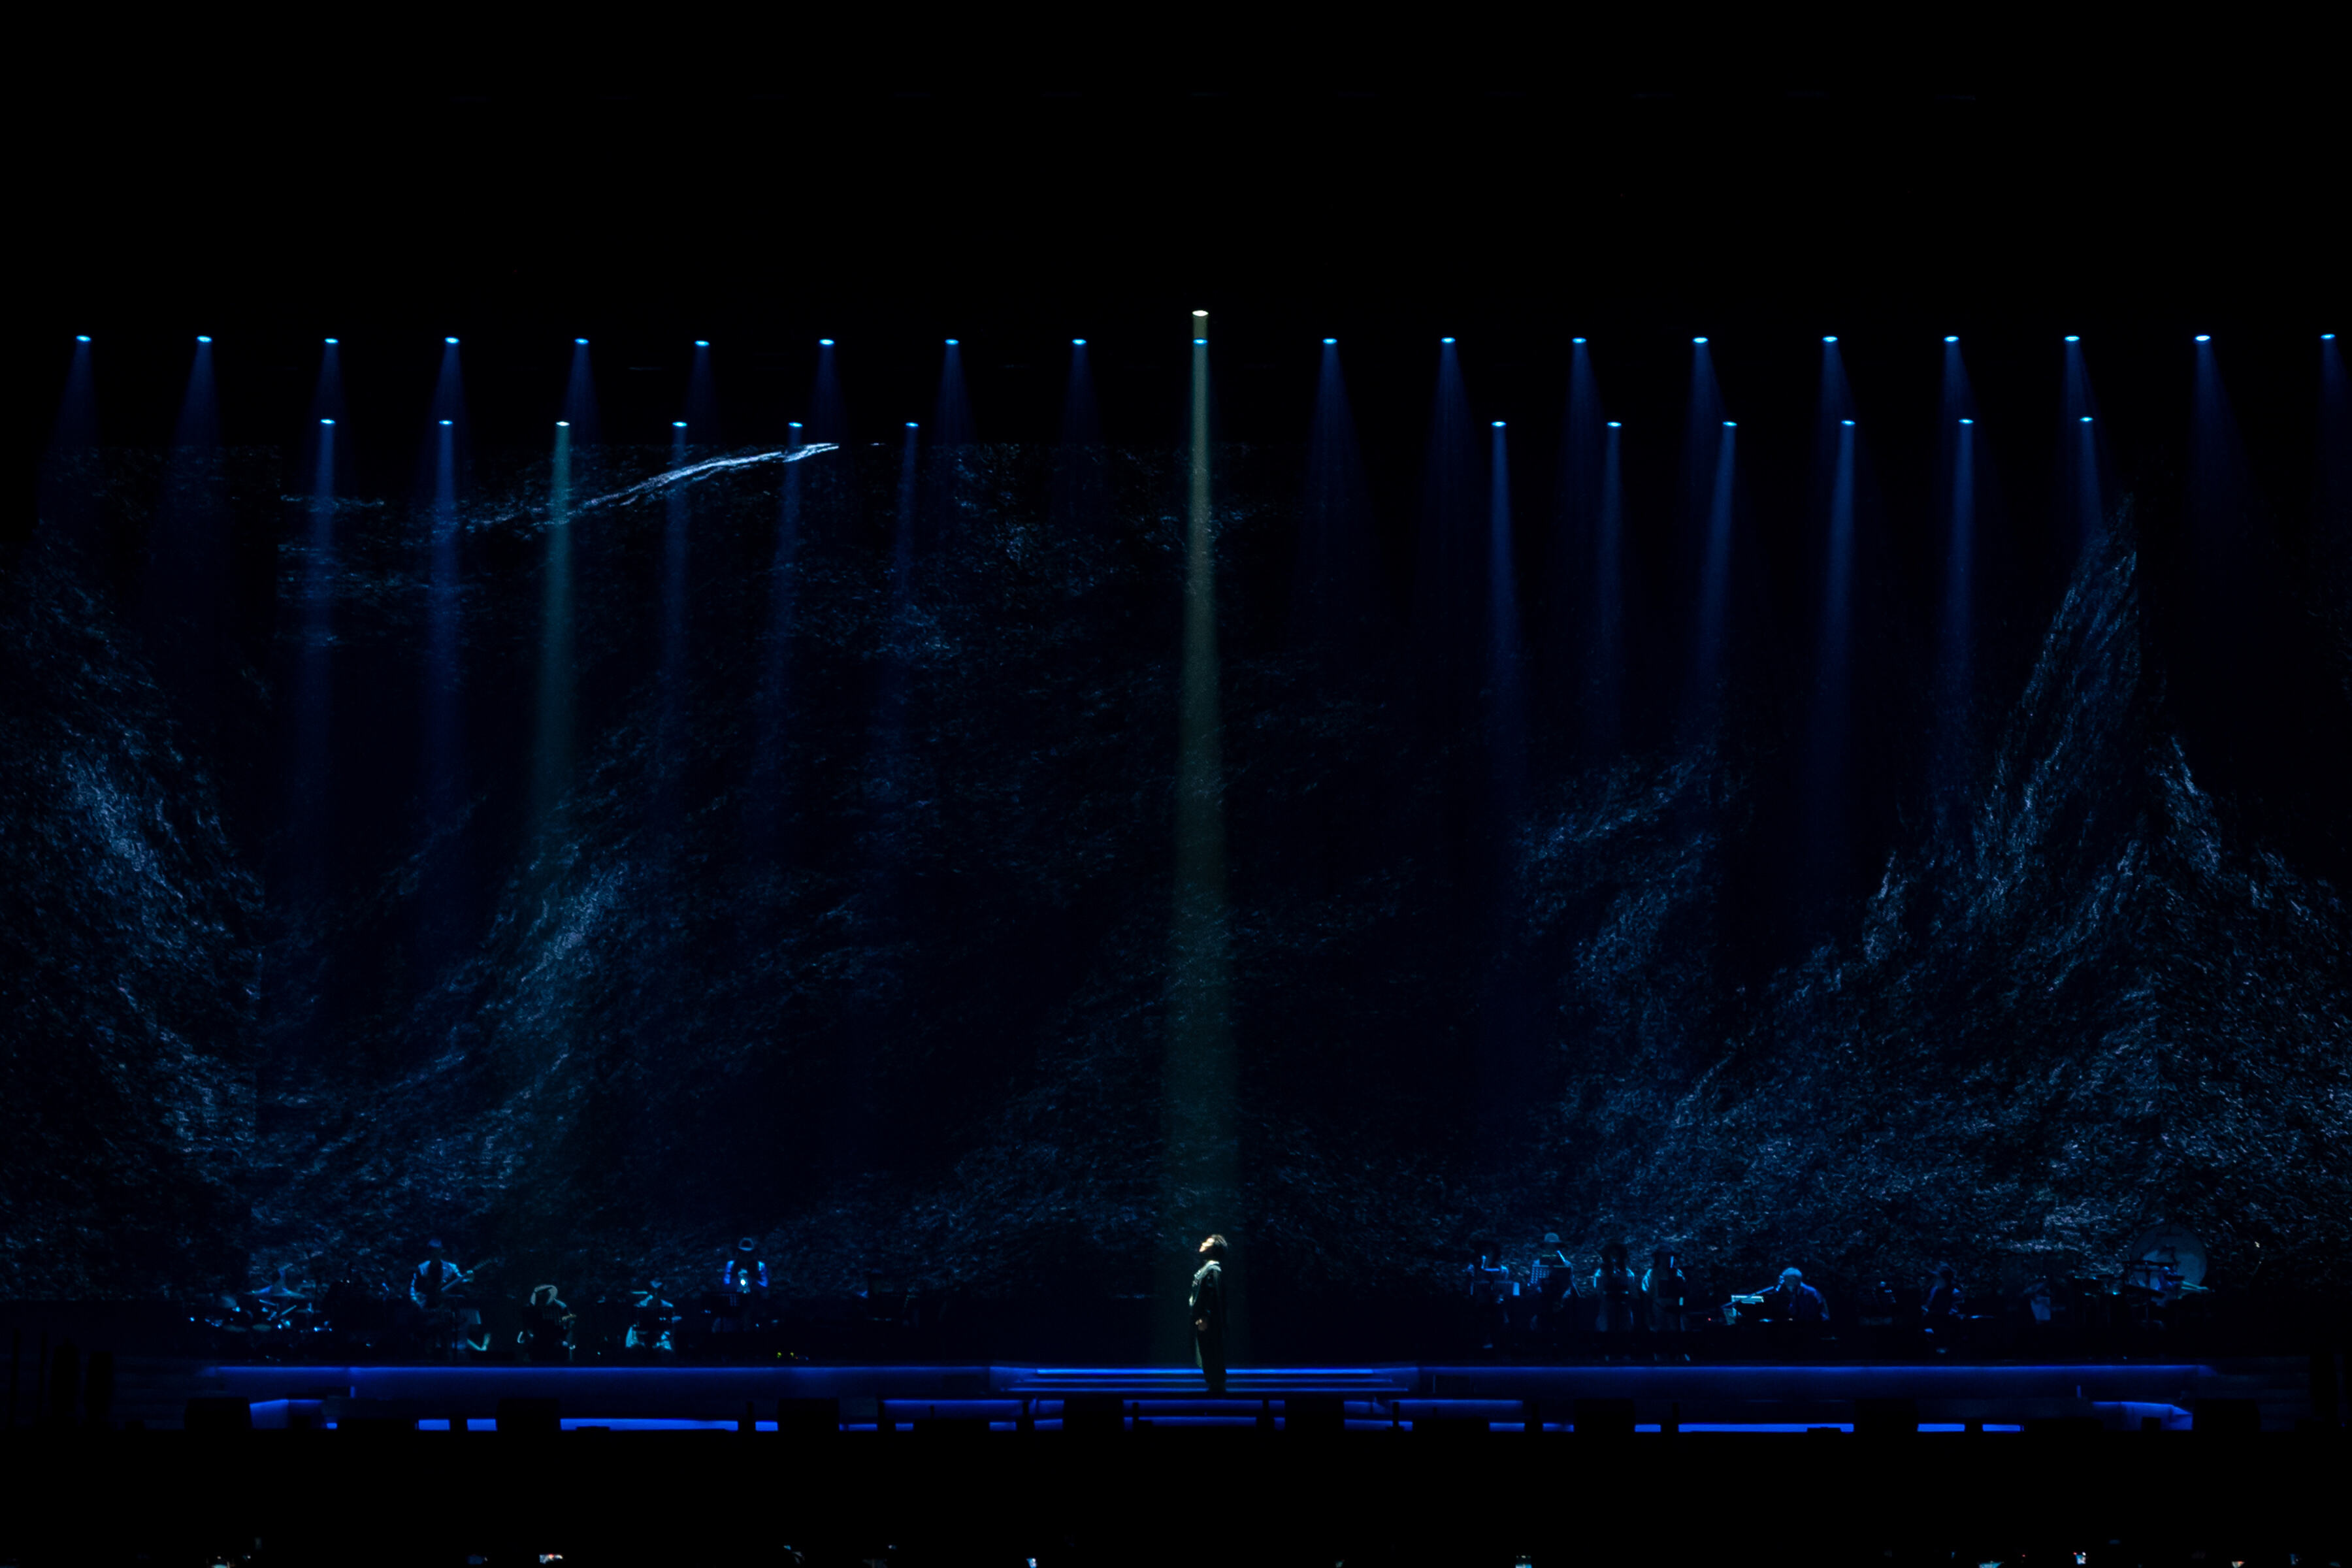 金曲歌王 “E神” 陈奕迅空降狮城 9000名歌迷共同见证陈奕迅的“恐惧与梦想”